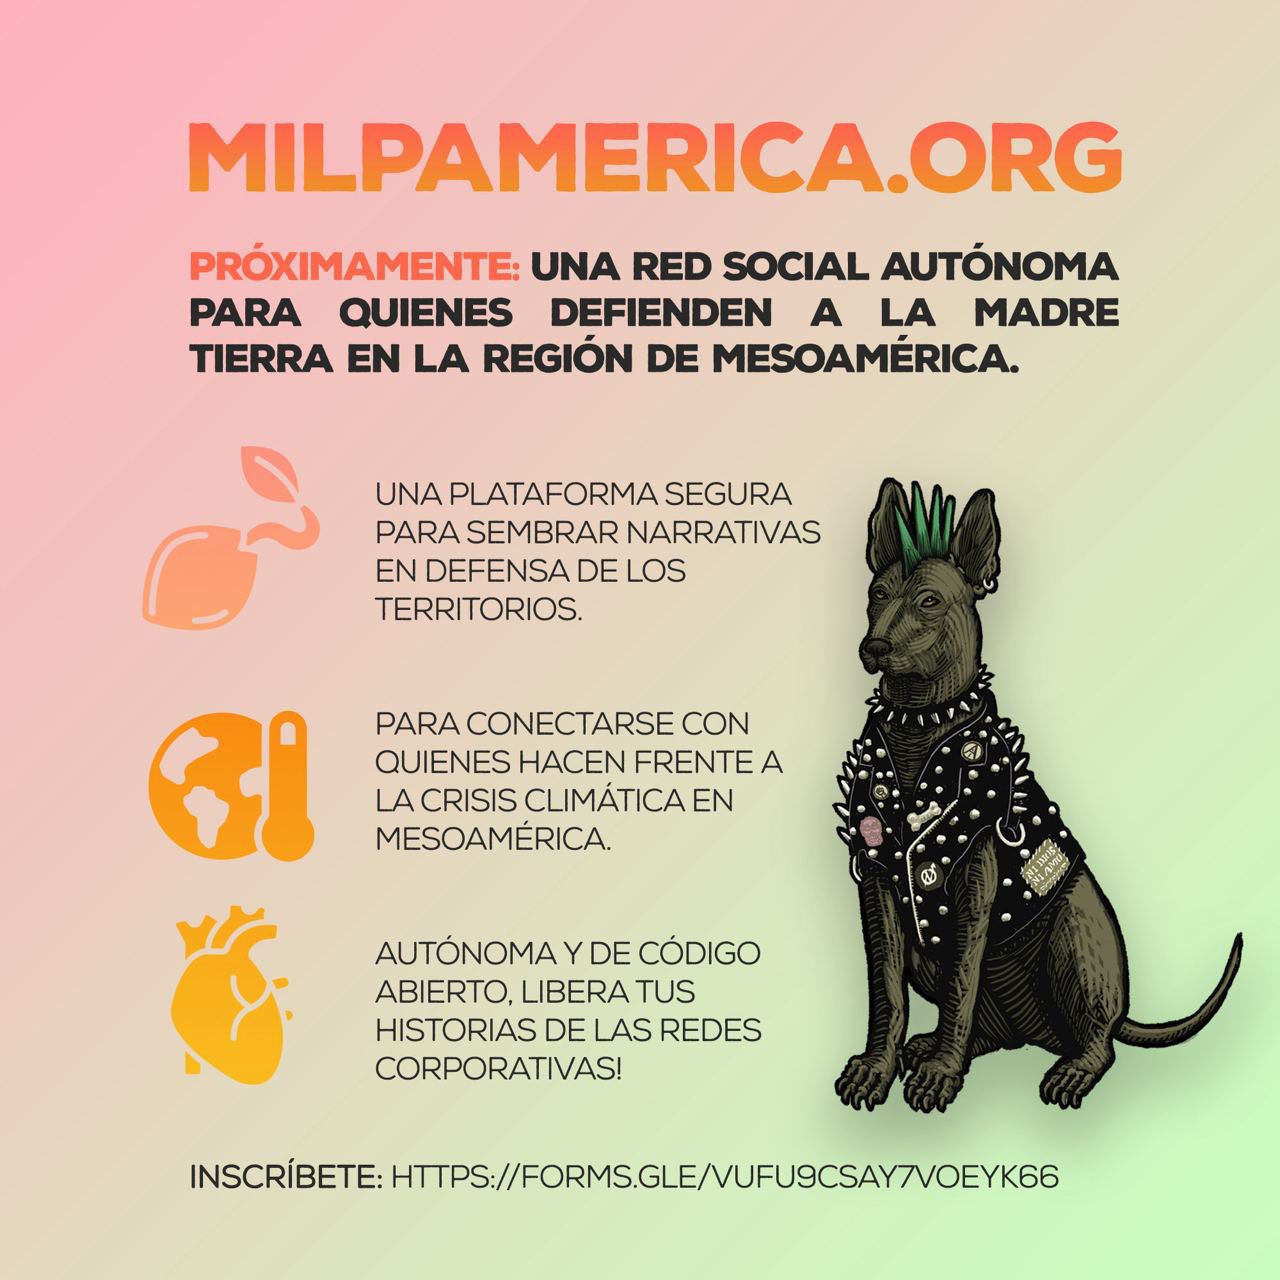 milpamerica.org registro abierto para activistas por la tierra y el medio ambiente